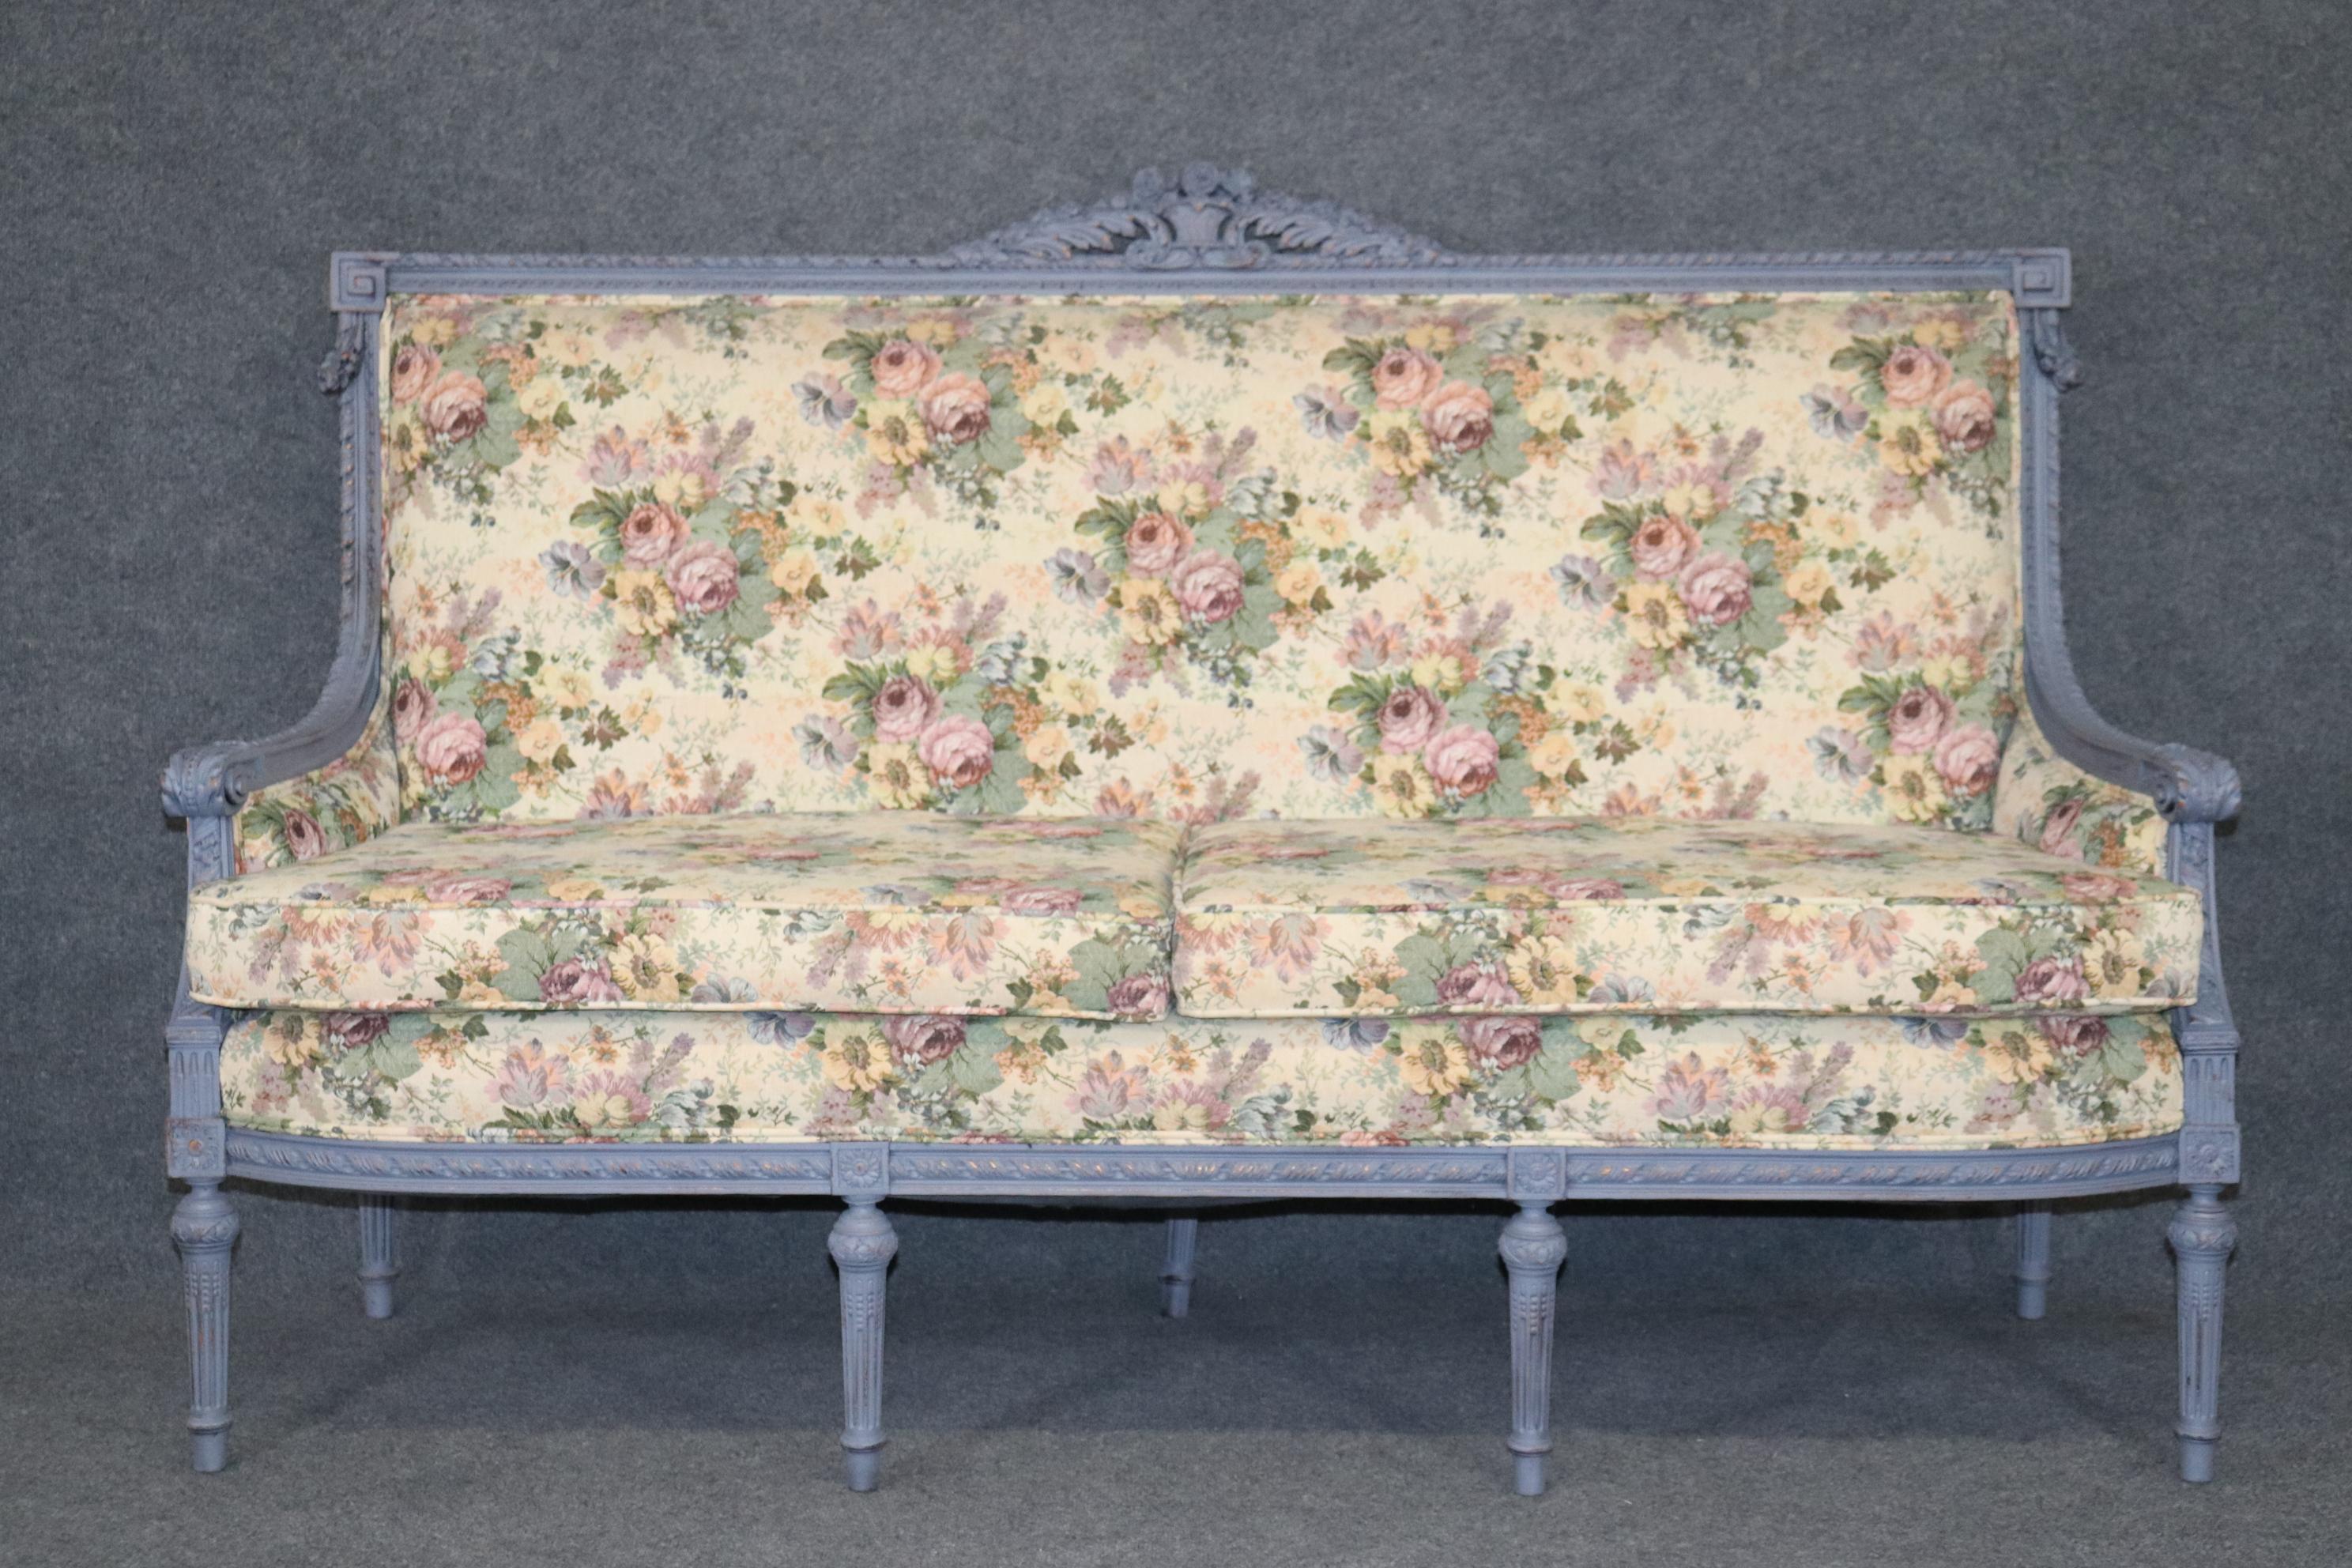 Abmessungen- H: 47in B: 74 1/4in T: 30 1/2in SH: 21 1/2in
Dies ist ein erstaunliches Stück von Louis XIV-Stil Möbel die notleidenden Finish sieht wirklich cool und und bringt Charakter auf das Stück. Dieses Sofa ist perfekt für jeden Wohnraum und